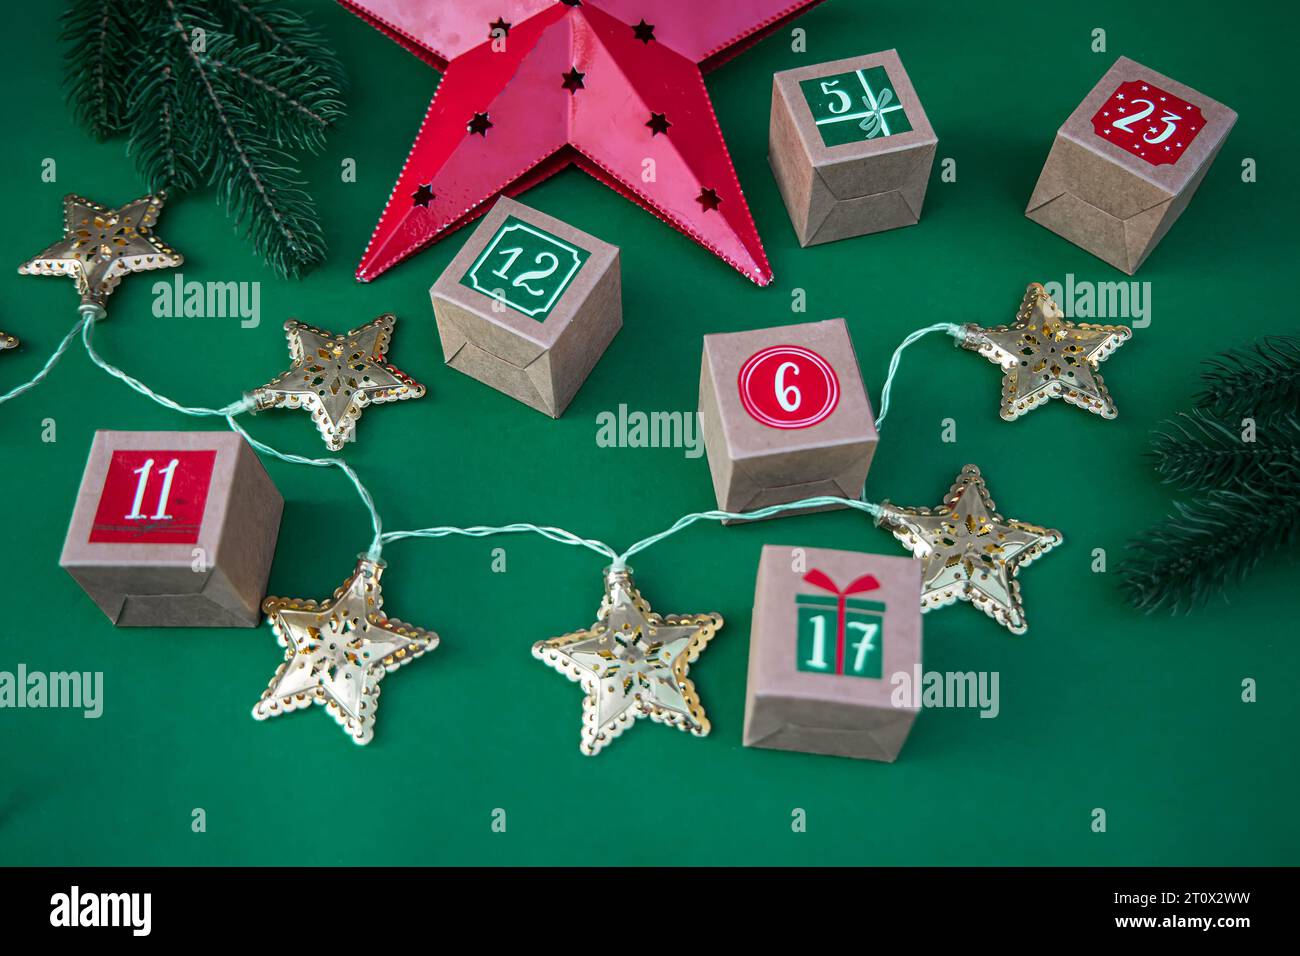 Calendrier de l'Avent fabriqué à la main : cubes de papier artisanal avec des chiffres sur un fond vert vibrant. Tradition de Noël et décoration festive Banque D'Images